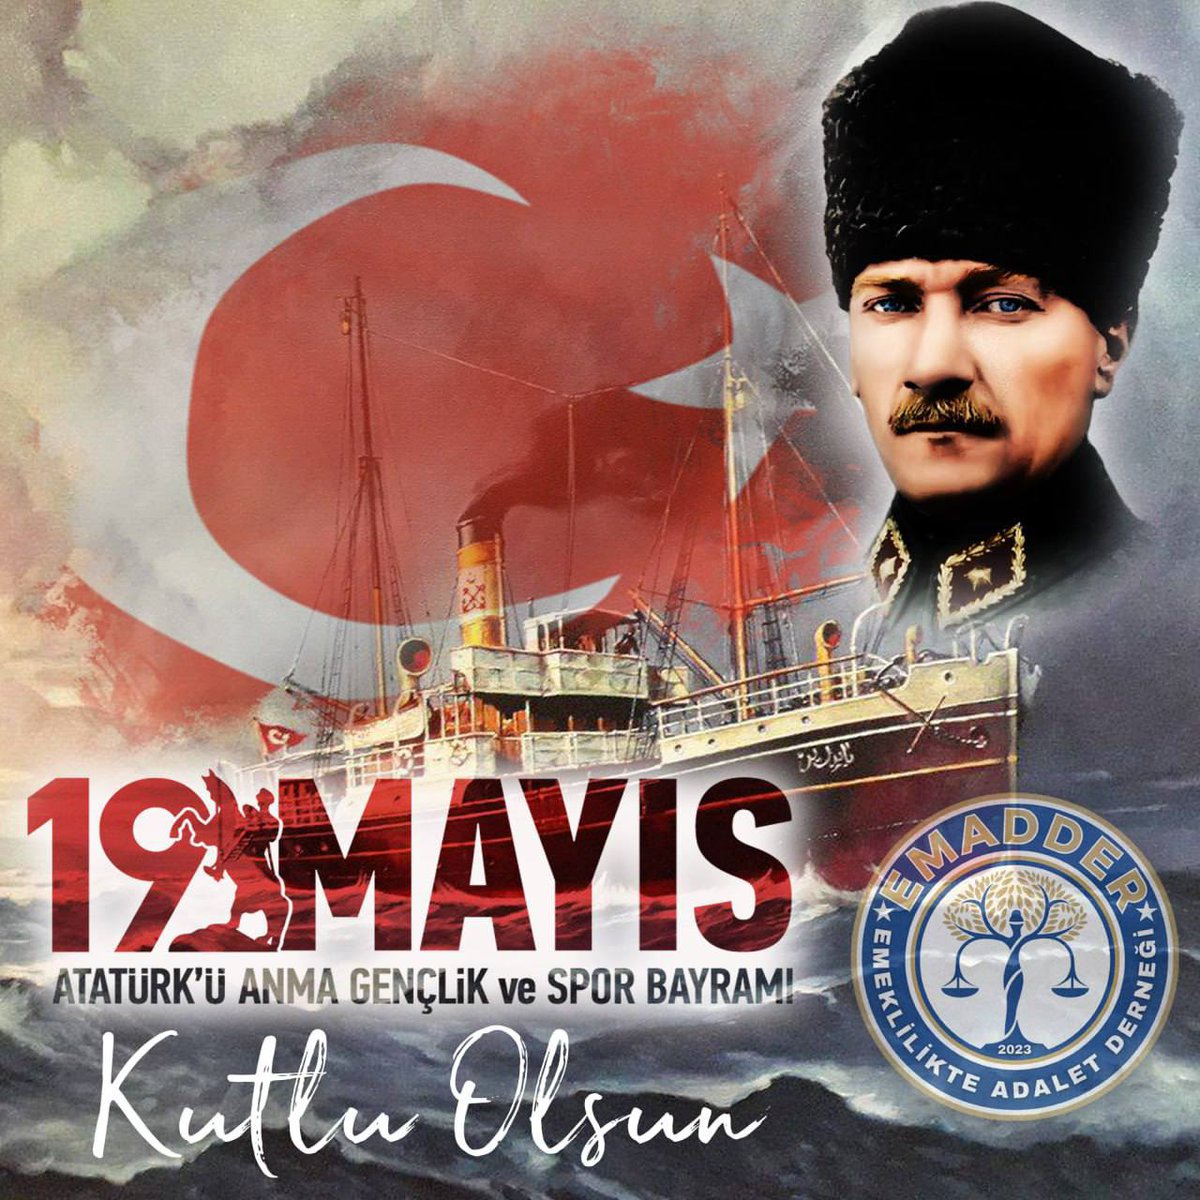 19 Mayıs Atatürk'ü Anma, Gençlik ve Spor Bayramı'mız kutlu olsun.'
🇹🇷NE MUTLU TÜRKÜM DİYENE 🇹🇷
#19MayısGenclikveSporBayramı🇹🇷
#19Mayıs1919 🇹🇷
#MustafaKemalAtatürk🇹🇷
#SonsuzaDekMinnettarız🇹🇷
#İyikiAtatürk 🇹🇷
#19MayısGururla🇹🇷
 #ParolamızKademeliEmeklilik